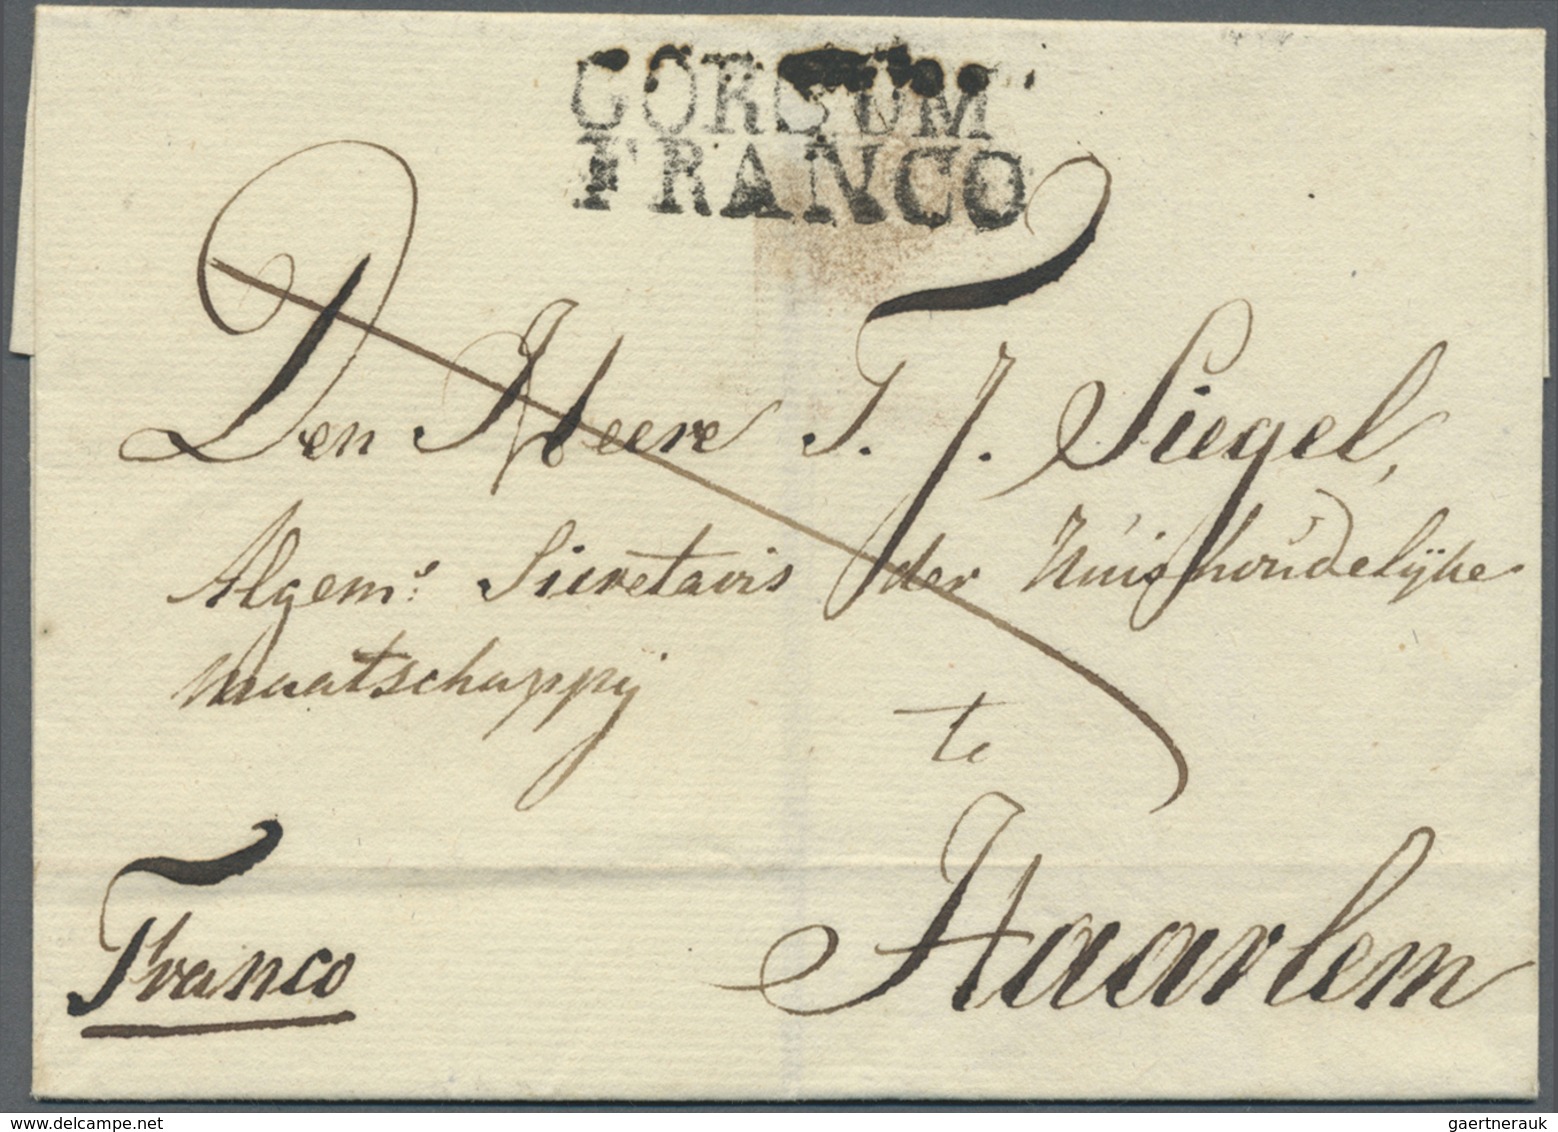 Br Niederlande - Vorphilatelie: 1800/1850 (ca.), Partie von ca. 110 Briefen mit verschiedensten "FRANCO